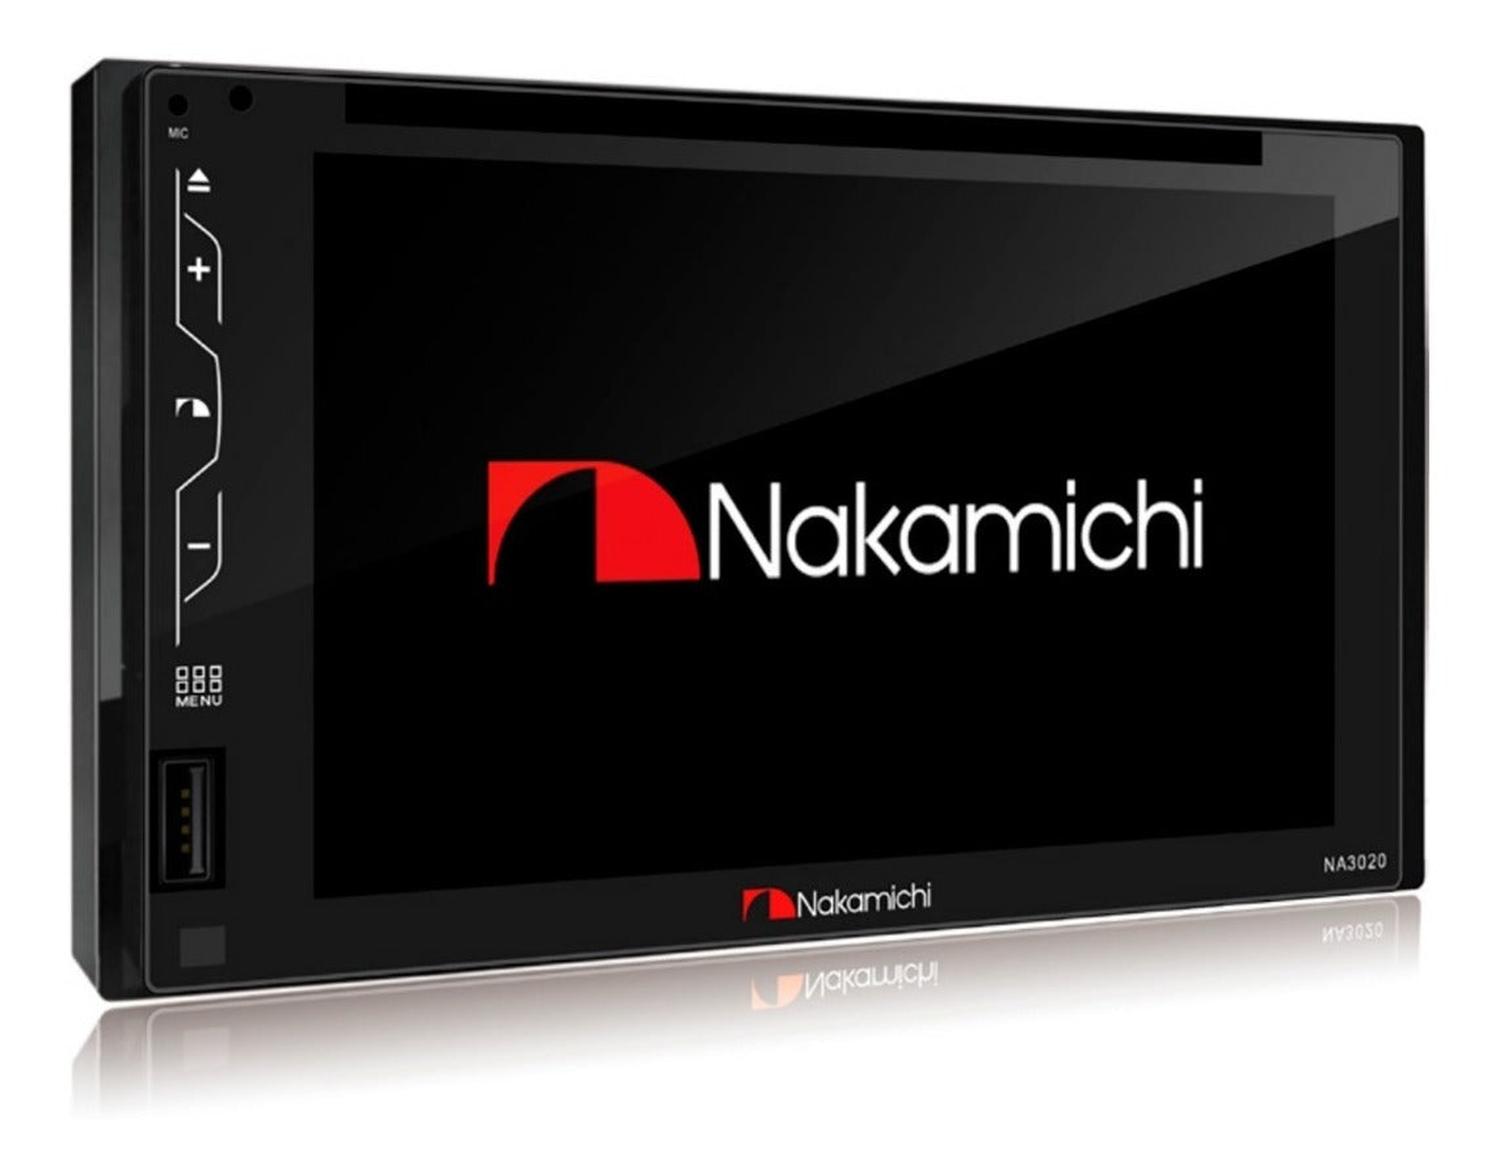 Autoestéreo Nakamichi Na3020 Dvd 50 Watts 6.2" Dvd/usb/sd/bt - Audioshop México lo mejor en Car Audio en México -  Nakamichi